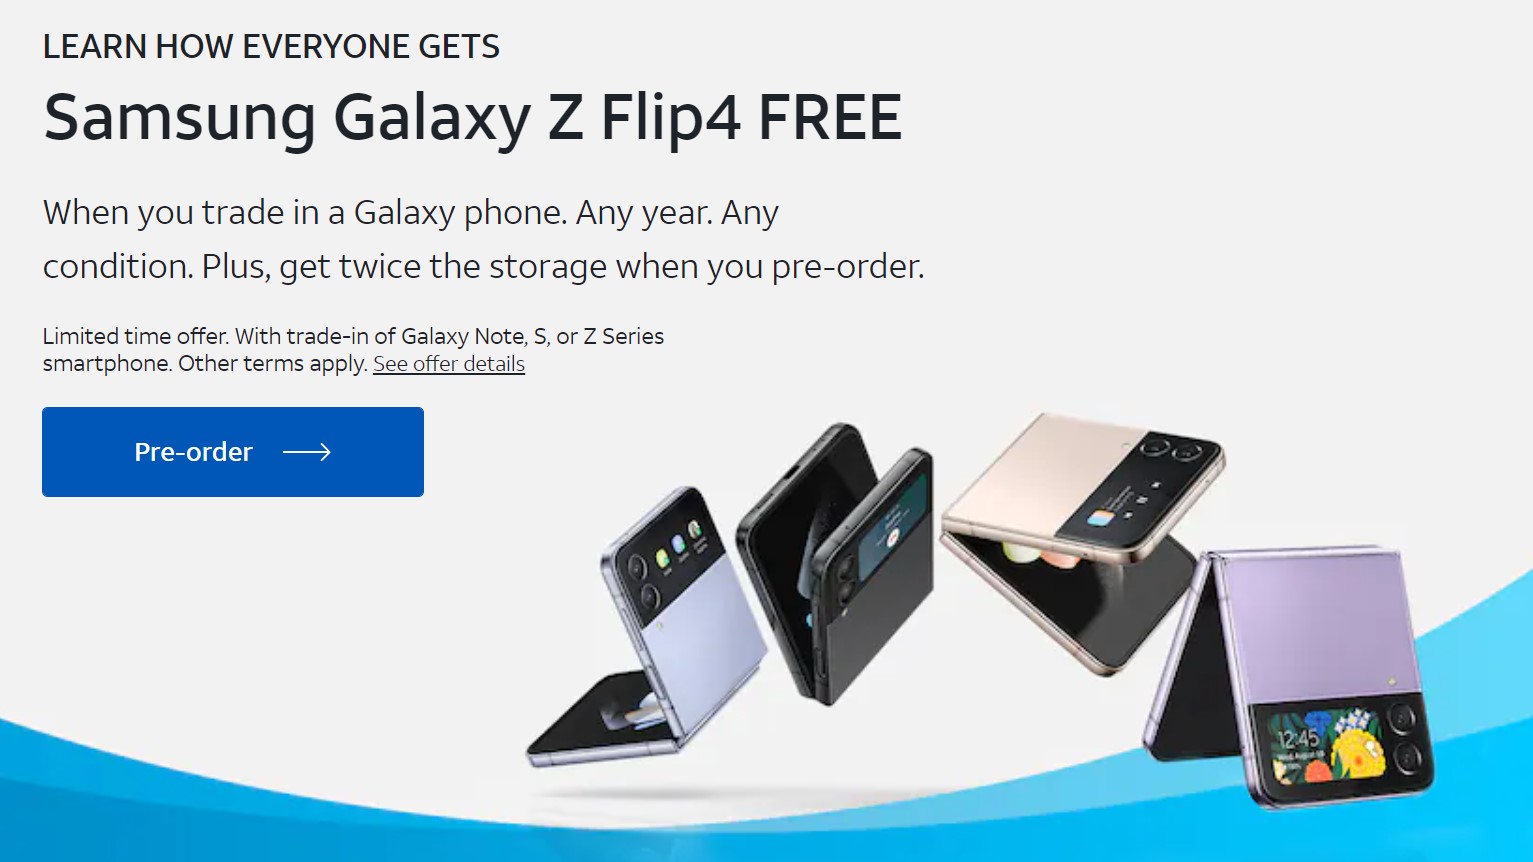 AT&T реклама, предлагающая бесплатную Galaxy Z Flip с продажей, показывающей несколько телефонов Galaxy Z Flip в открытом и закрытом состоянии